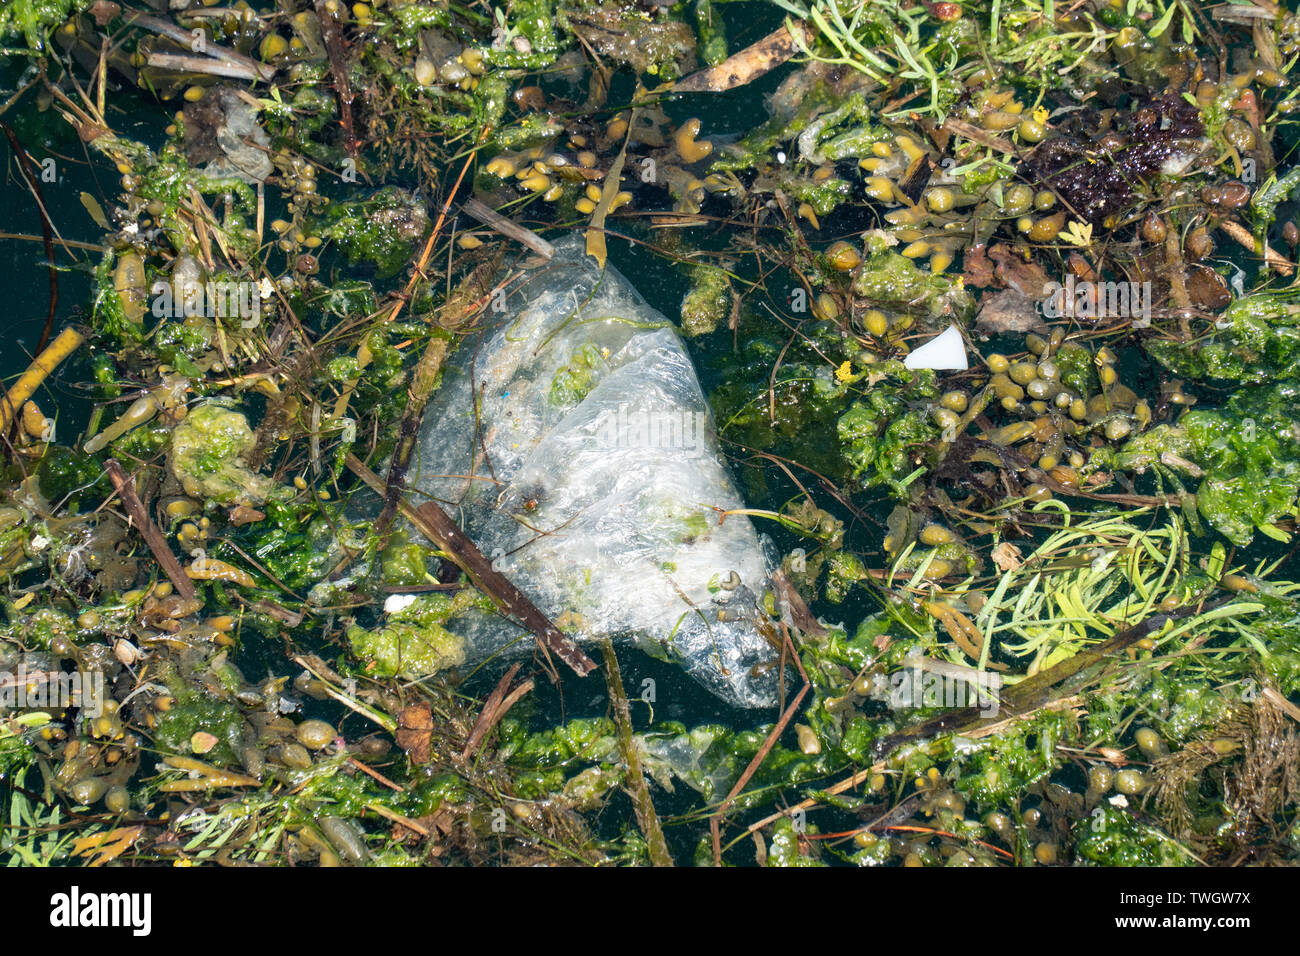 Plastikbeutel schwimmend auf Meerwasser durch Algen umgeben. Kunststoff Verschmutzung Konzept Stockfoto